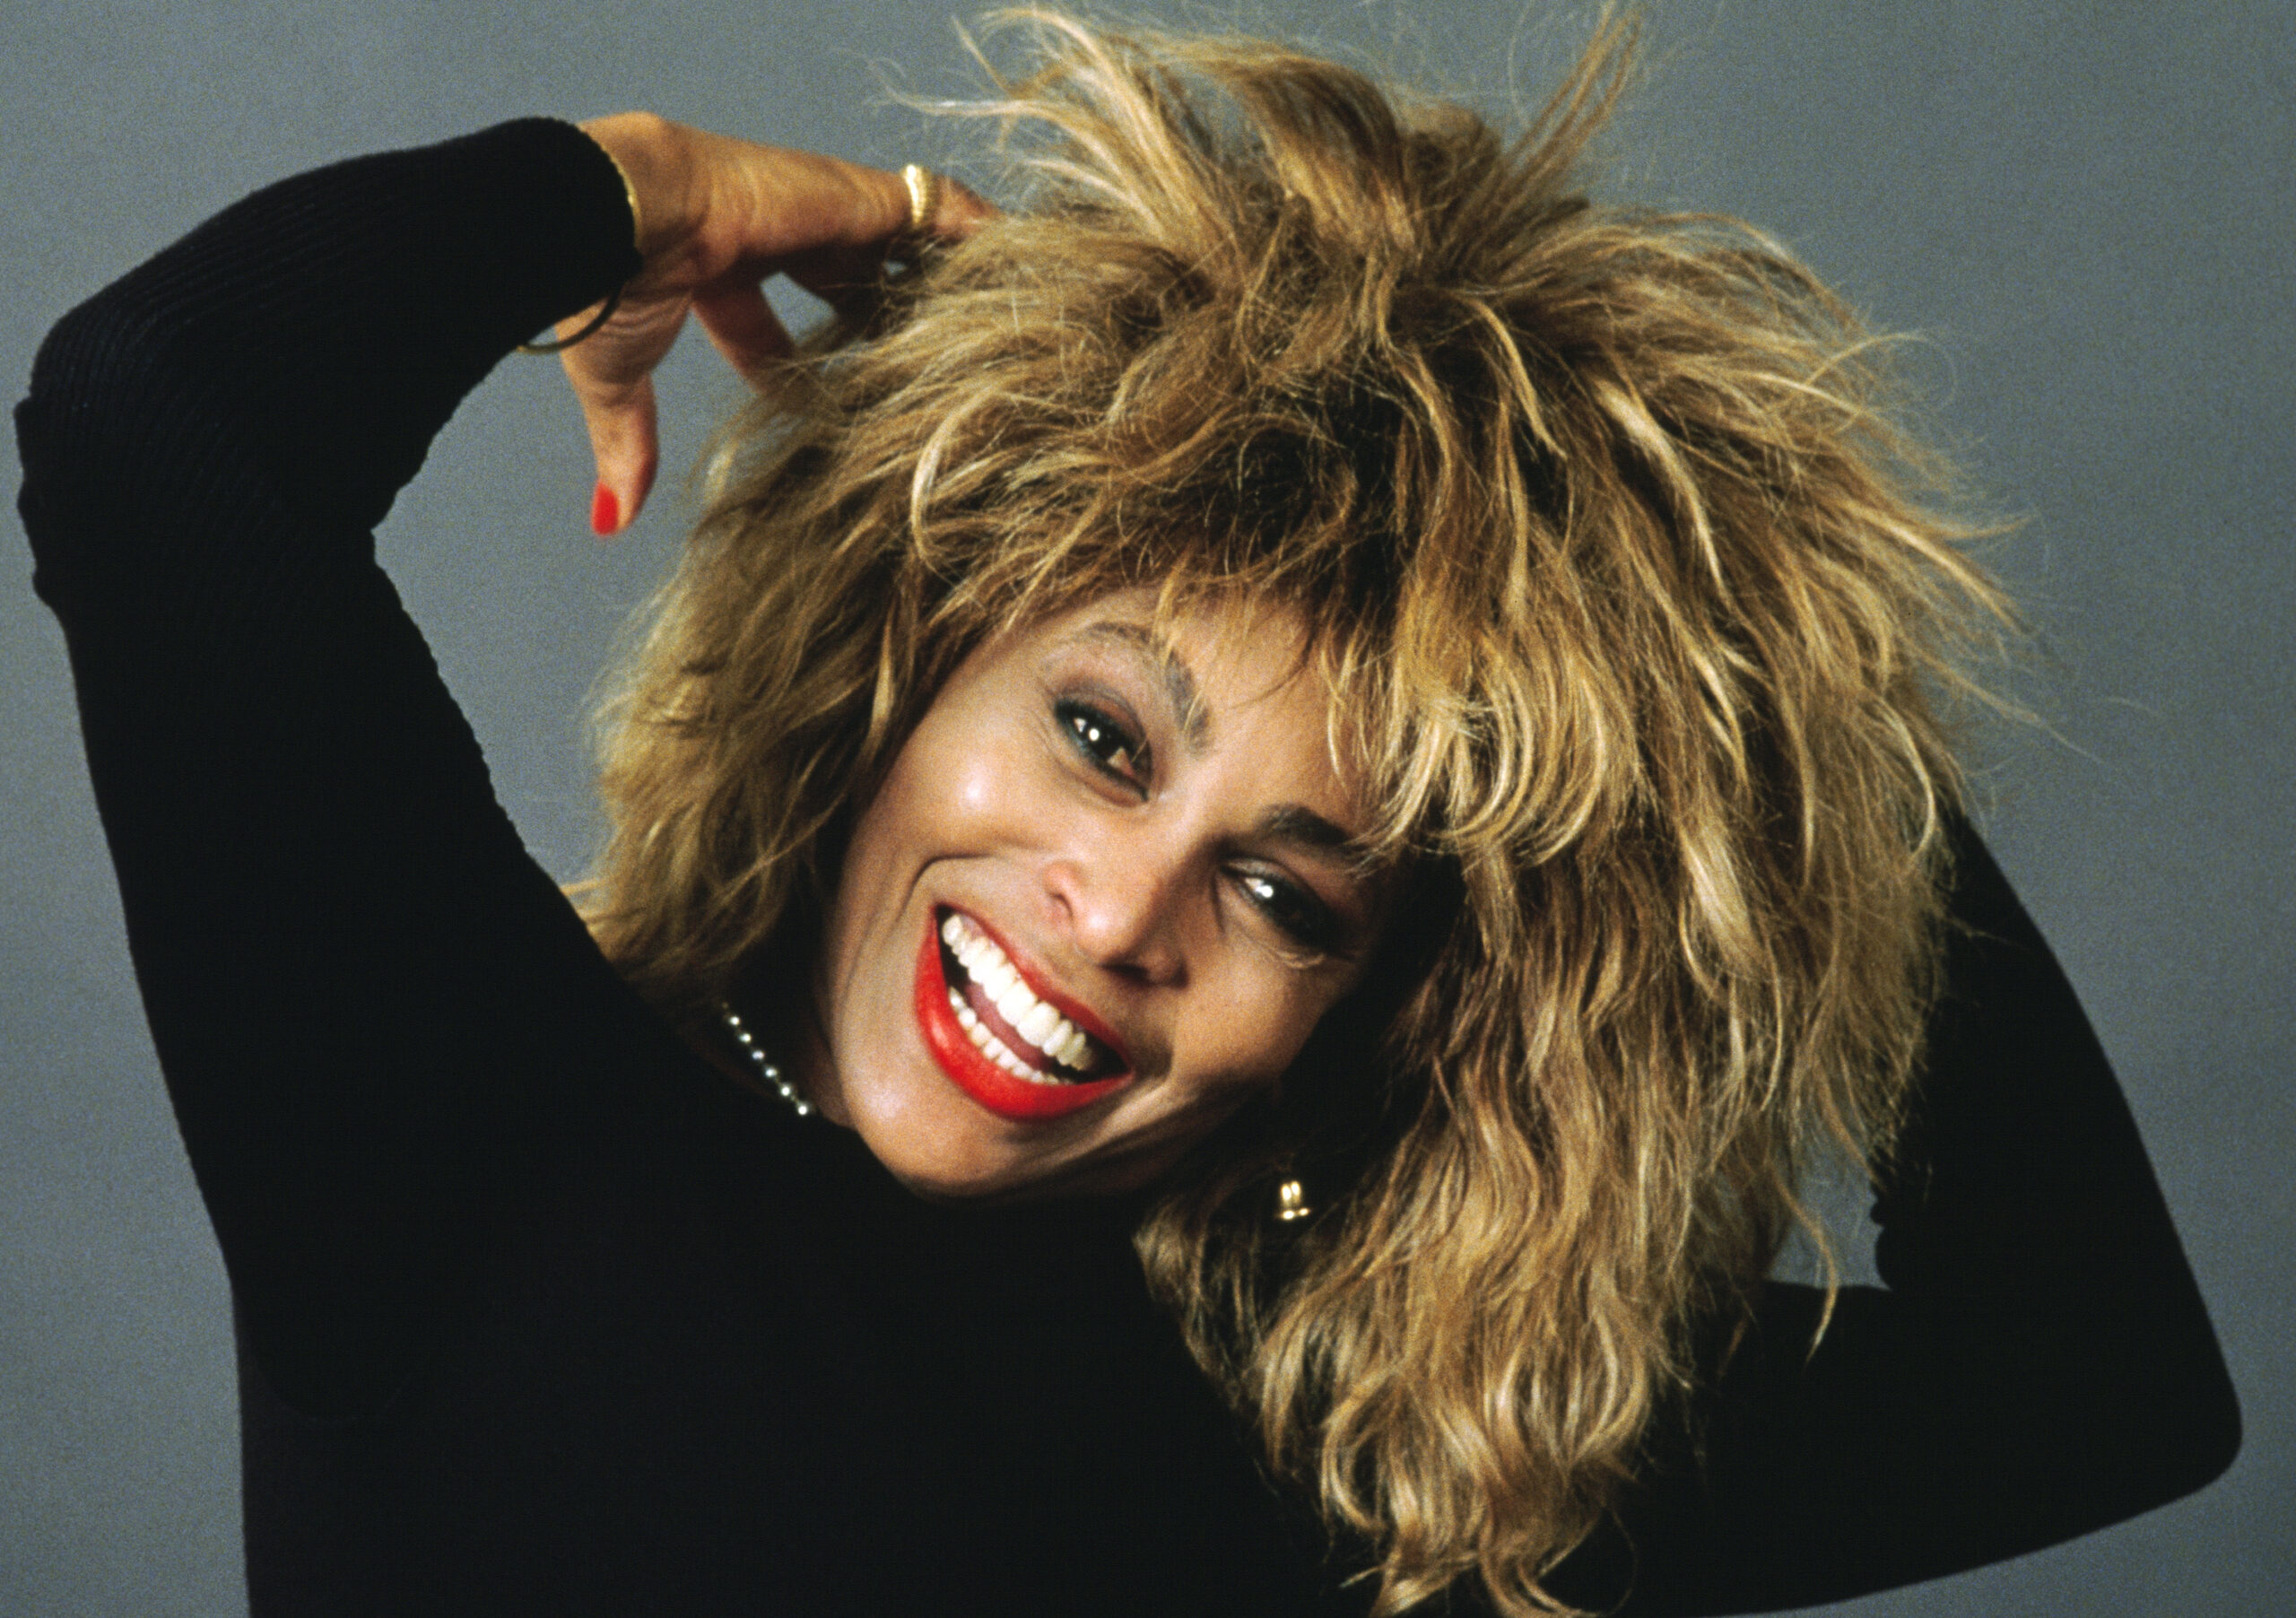 Tina Turner, iconic singer, dies at 83.